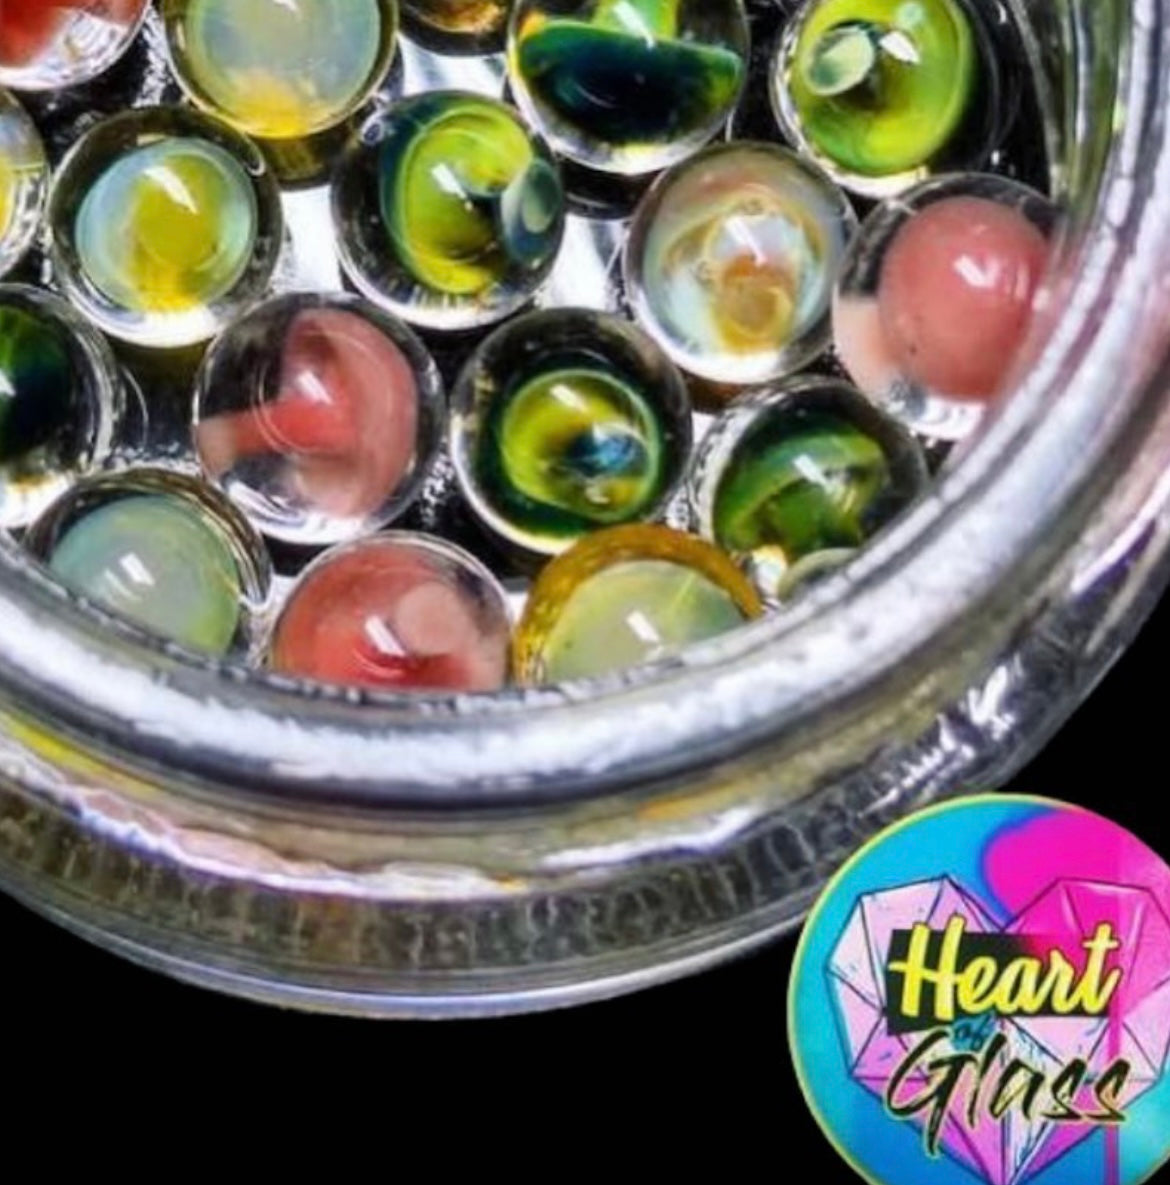 Heart Of Boro - Mushroom Terp Pearls